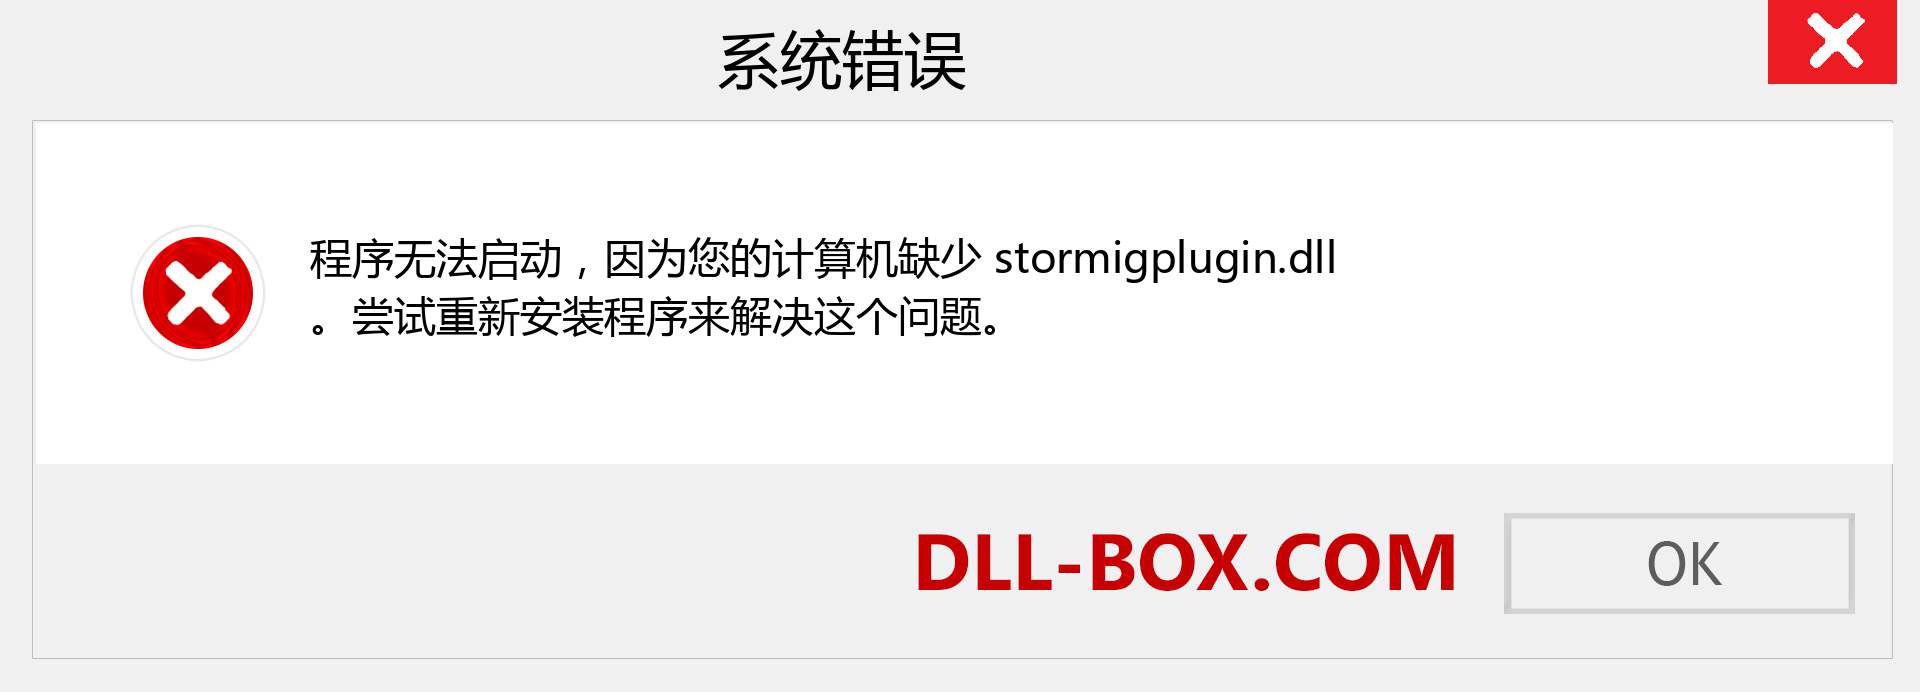 stormigplugin.dll 文件丢失？。 适用于 Windows 7、8、10 的下载 - 修复 Windows、照片、图像上的 stormigplugin dll 丢失错误